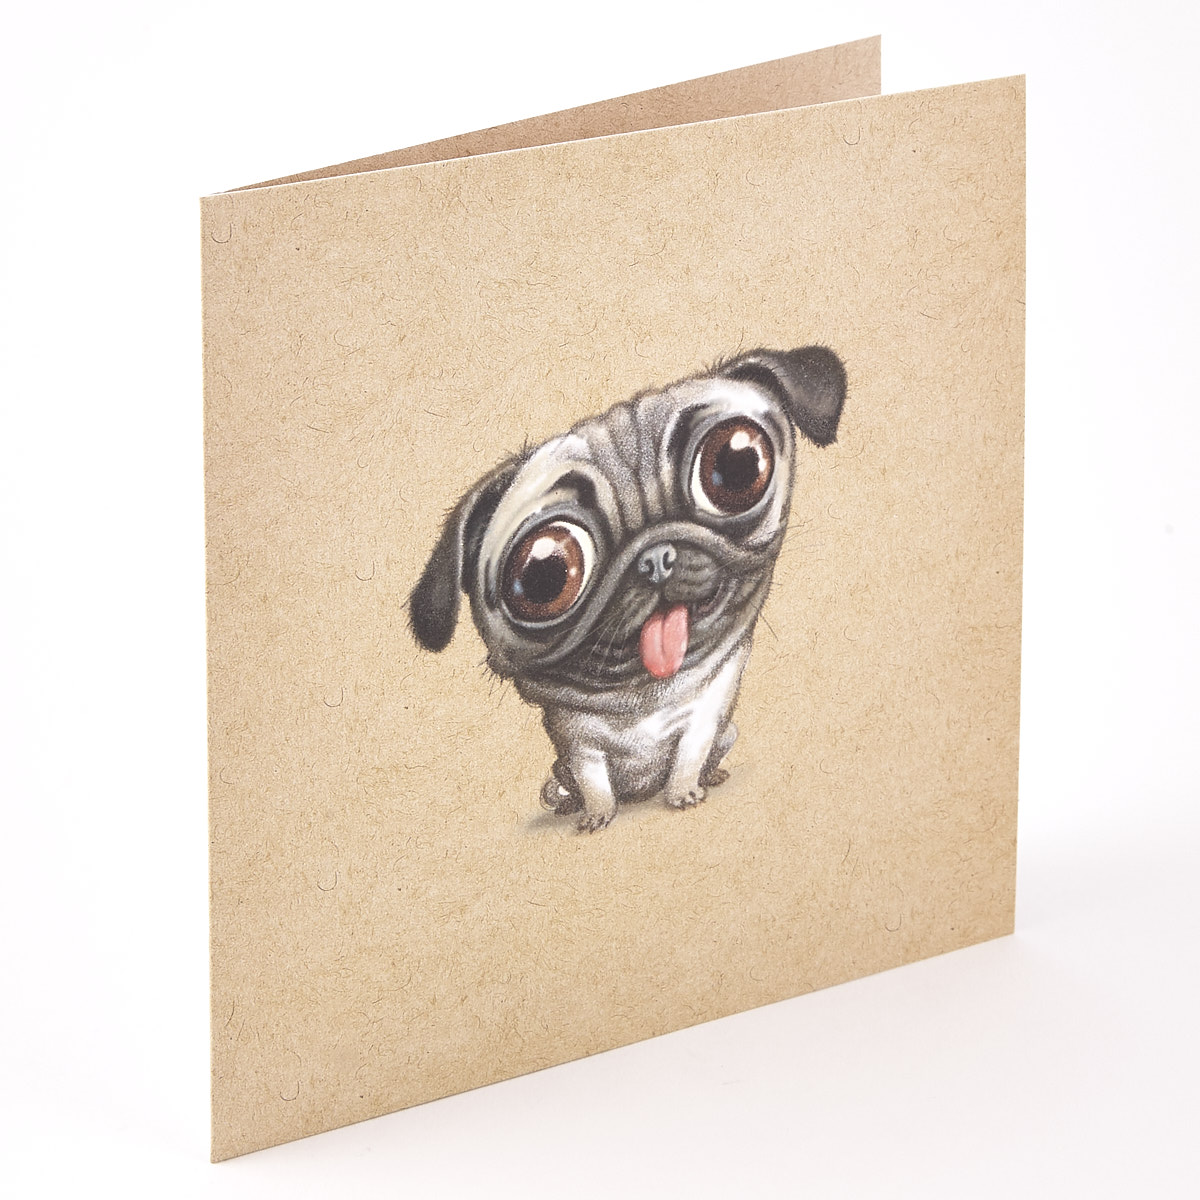 Big-Eyed Pug Card